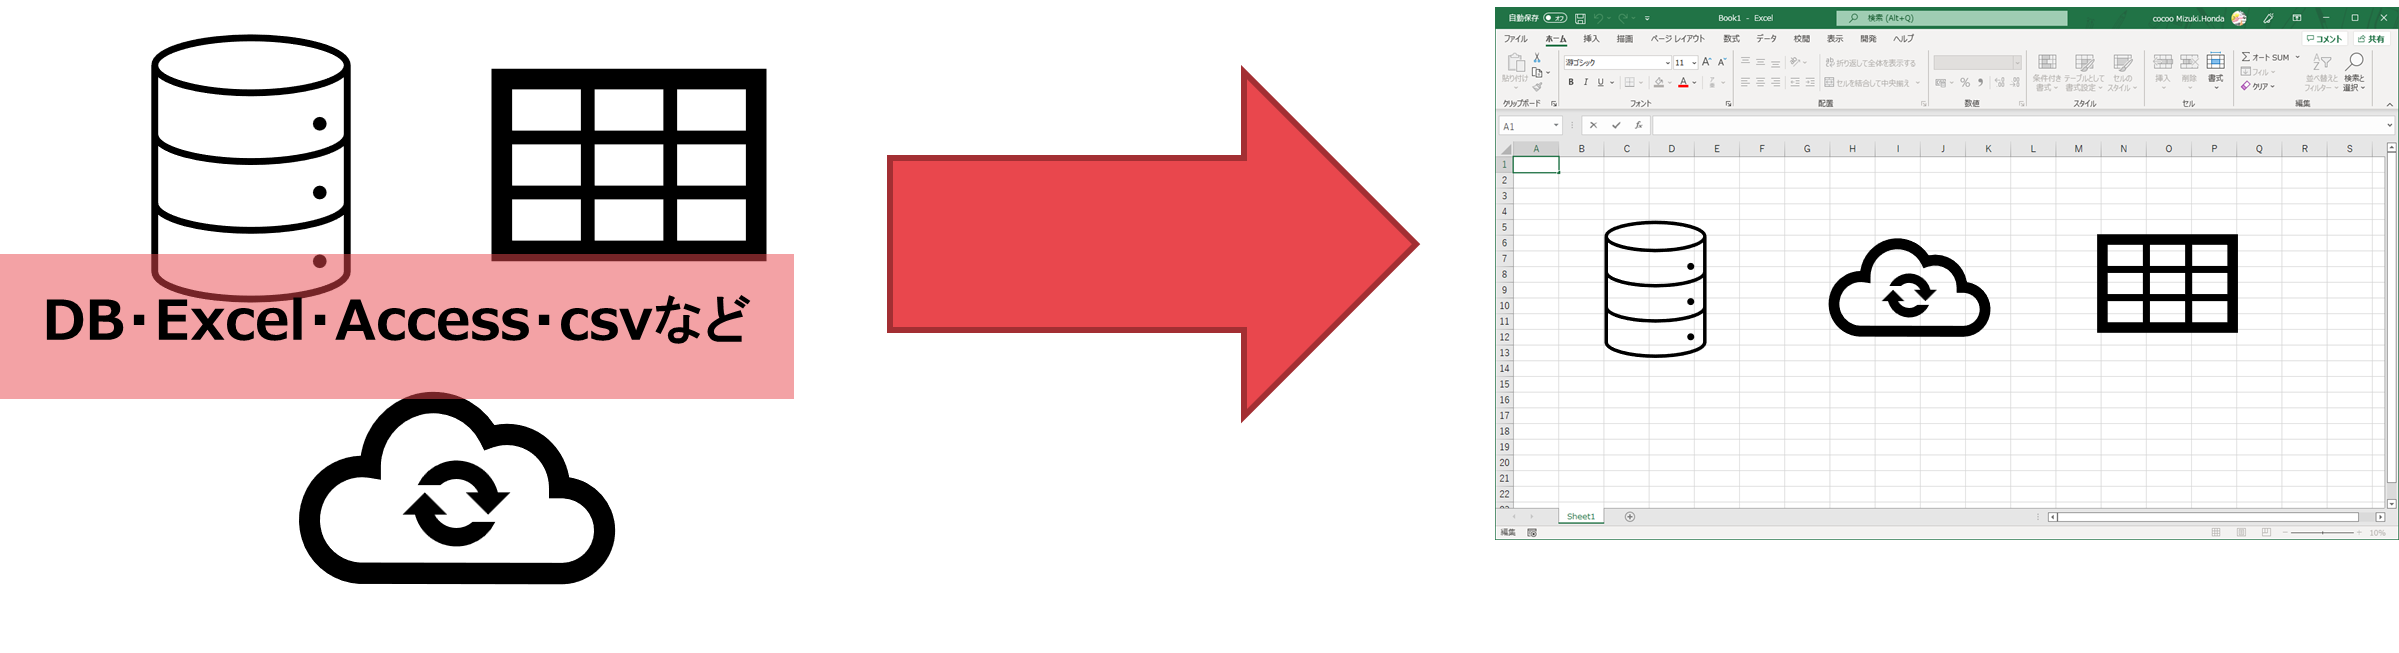 Excelでのデータ作業は、元データをExcelに読み込んで作業する必要があることを表した図